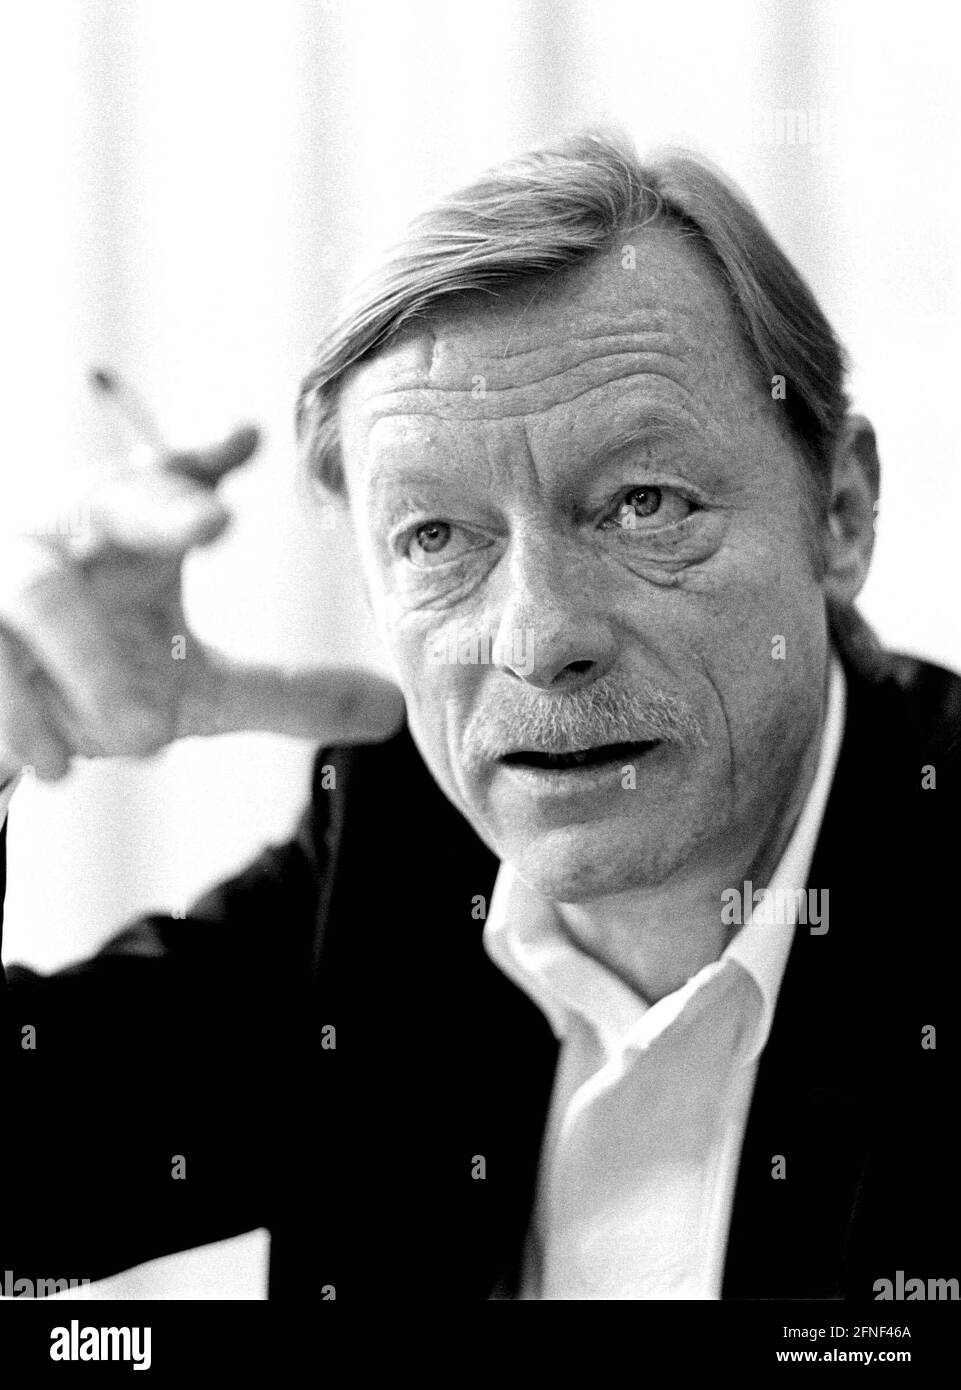 Otto Sander (geboren 1941), deutscher Schauspieler, während einer Lesung im Harenberg City Center in Dortmund. [Automatisierte Übersetzung] Stockfoto